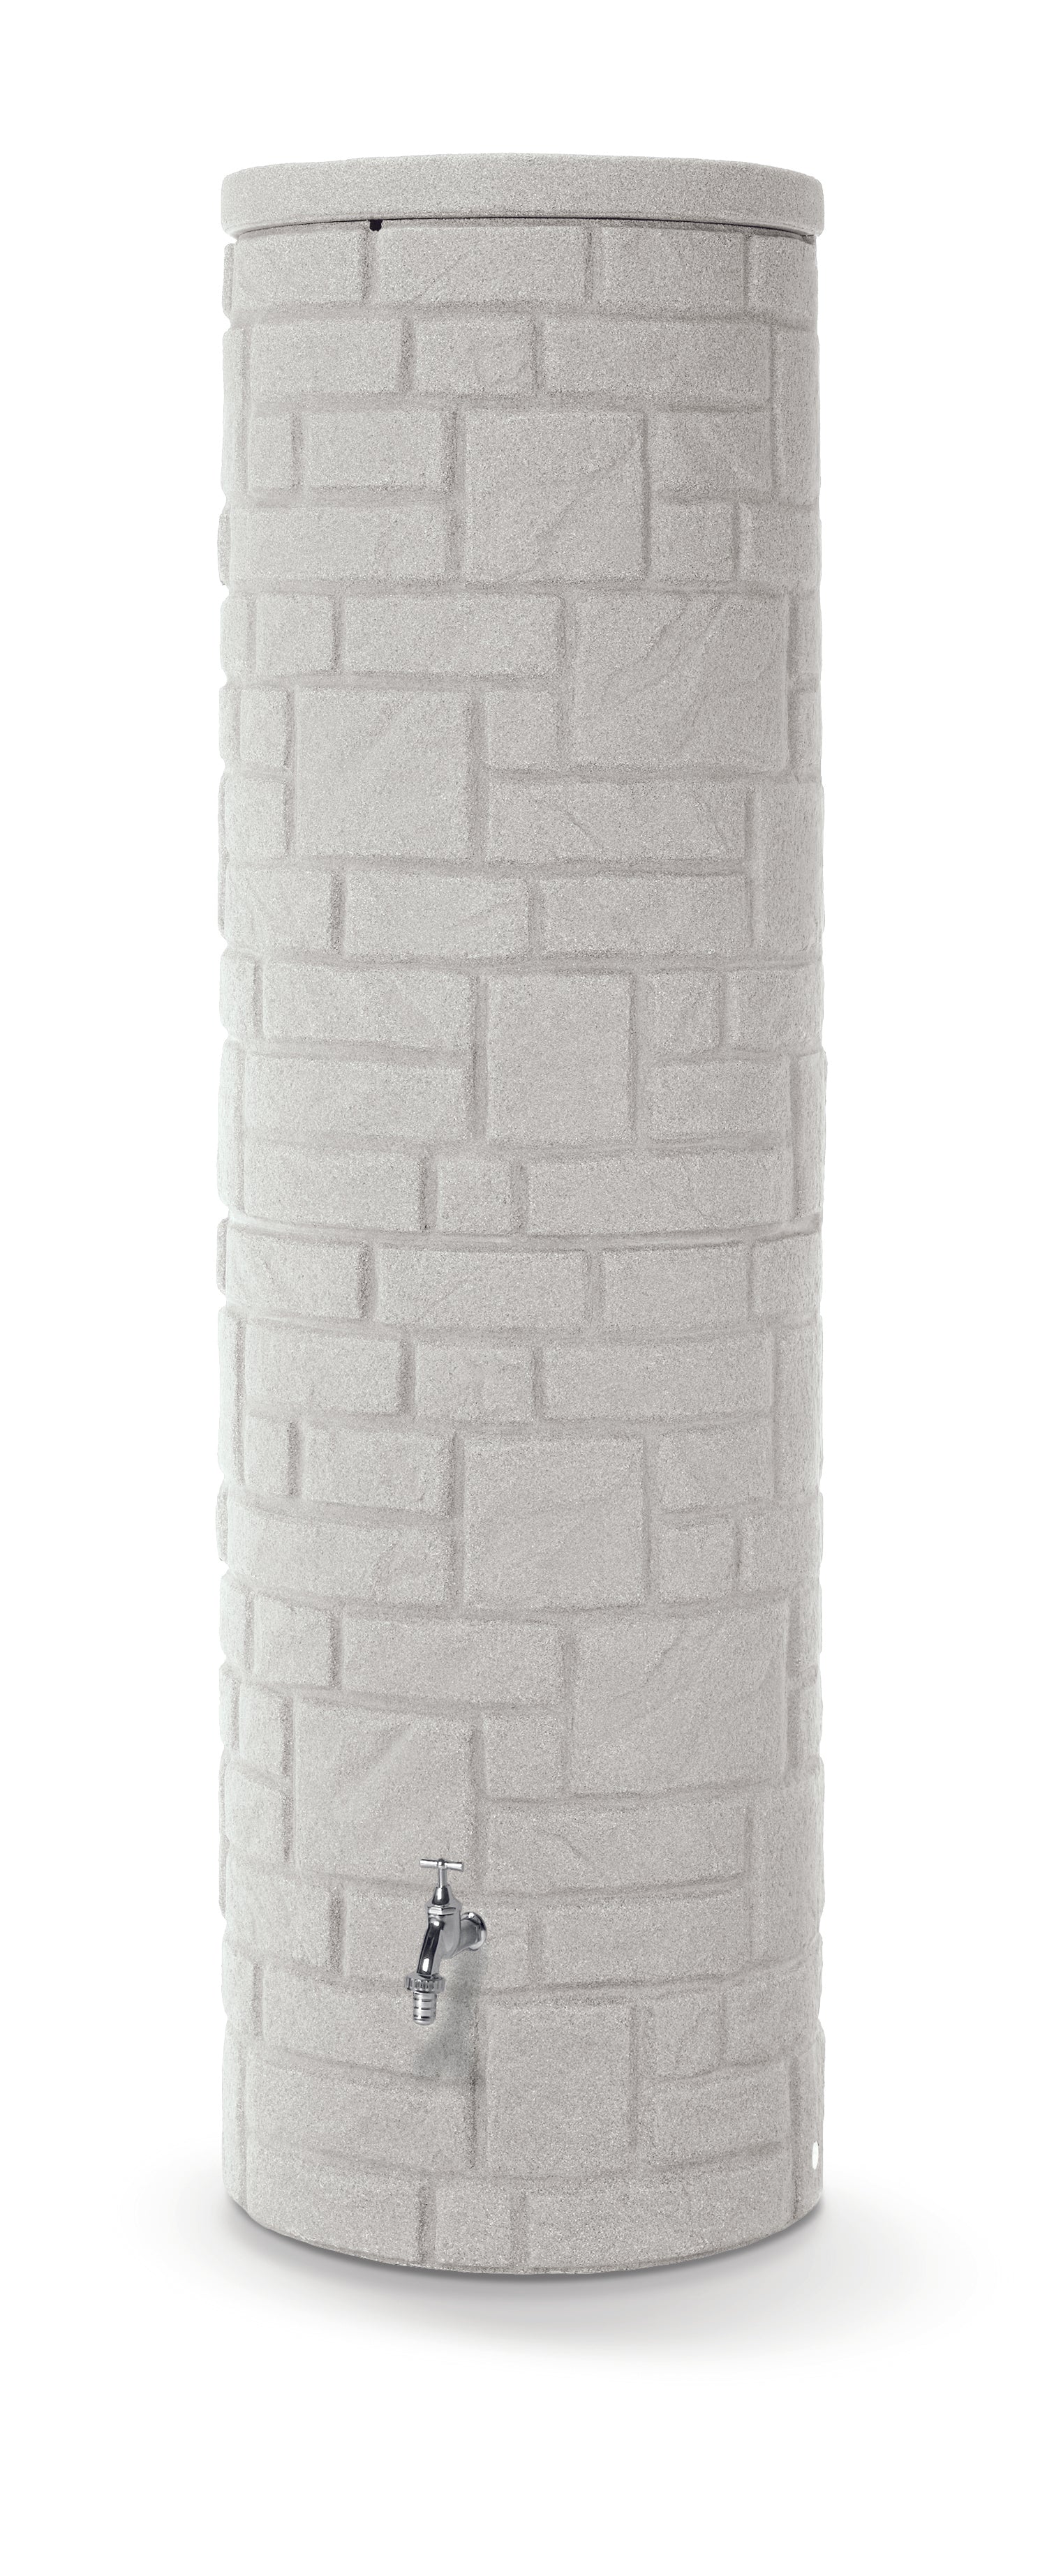 Eine graue, zylindrische Wassertonne mit einer YourCasa Regentonne [StoneRain] - Frostsicher & UV-beständig und einem Zapfhahn, isoliert auf weißem Hintergrund von yourcasa-de.